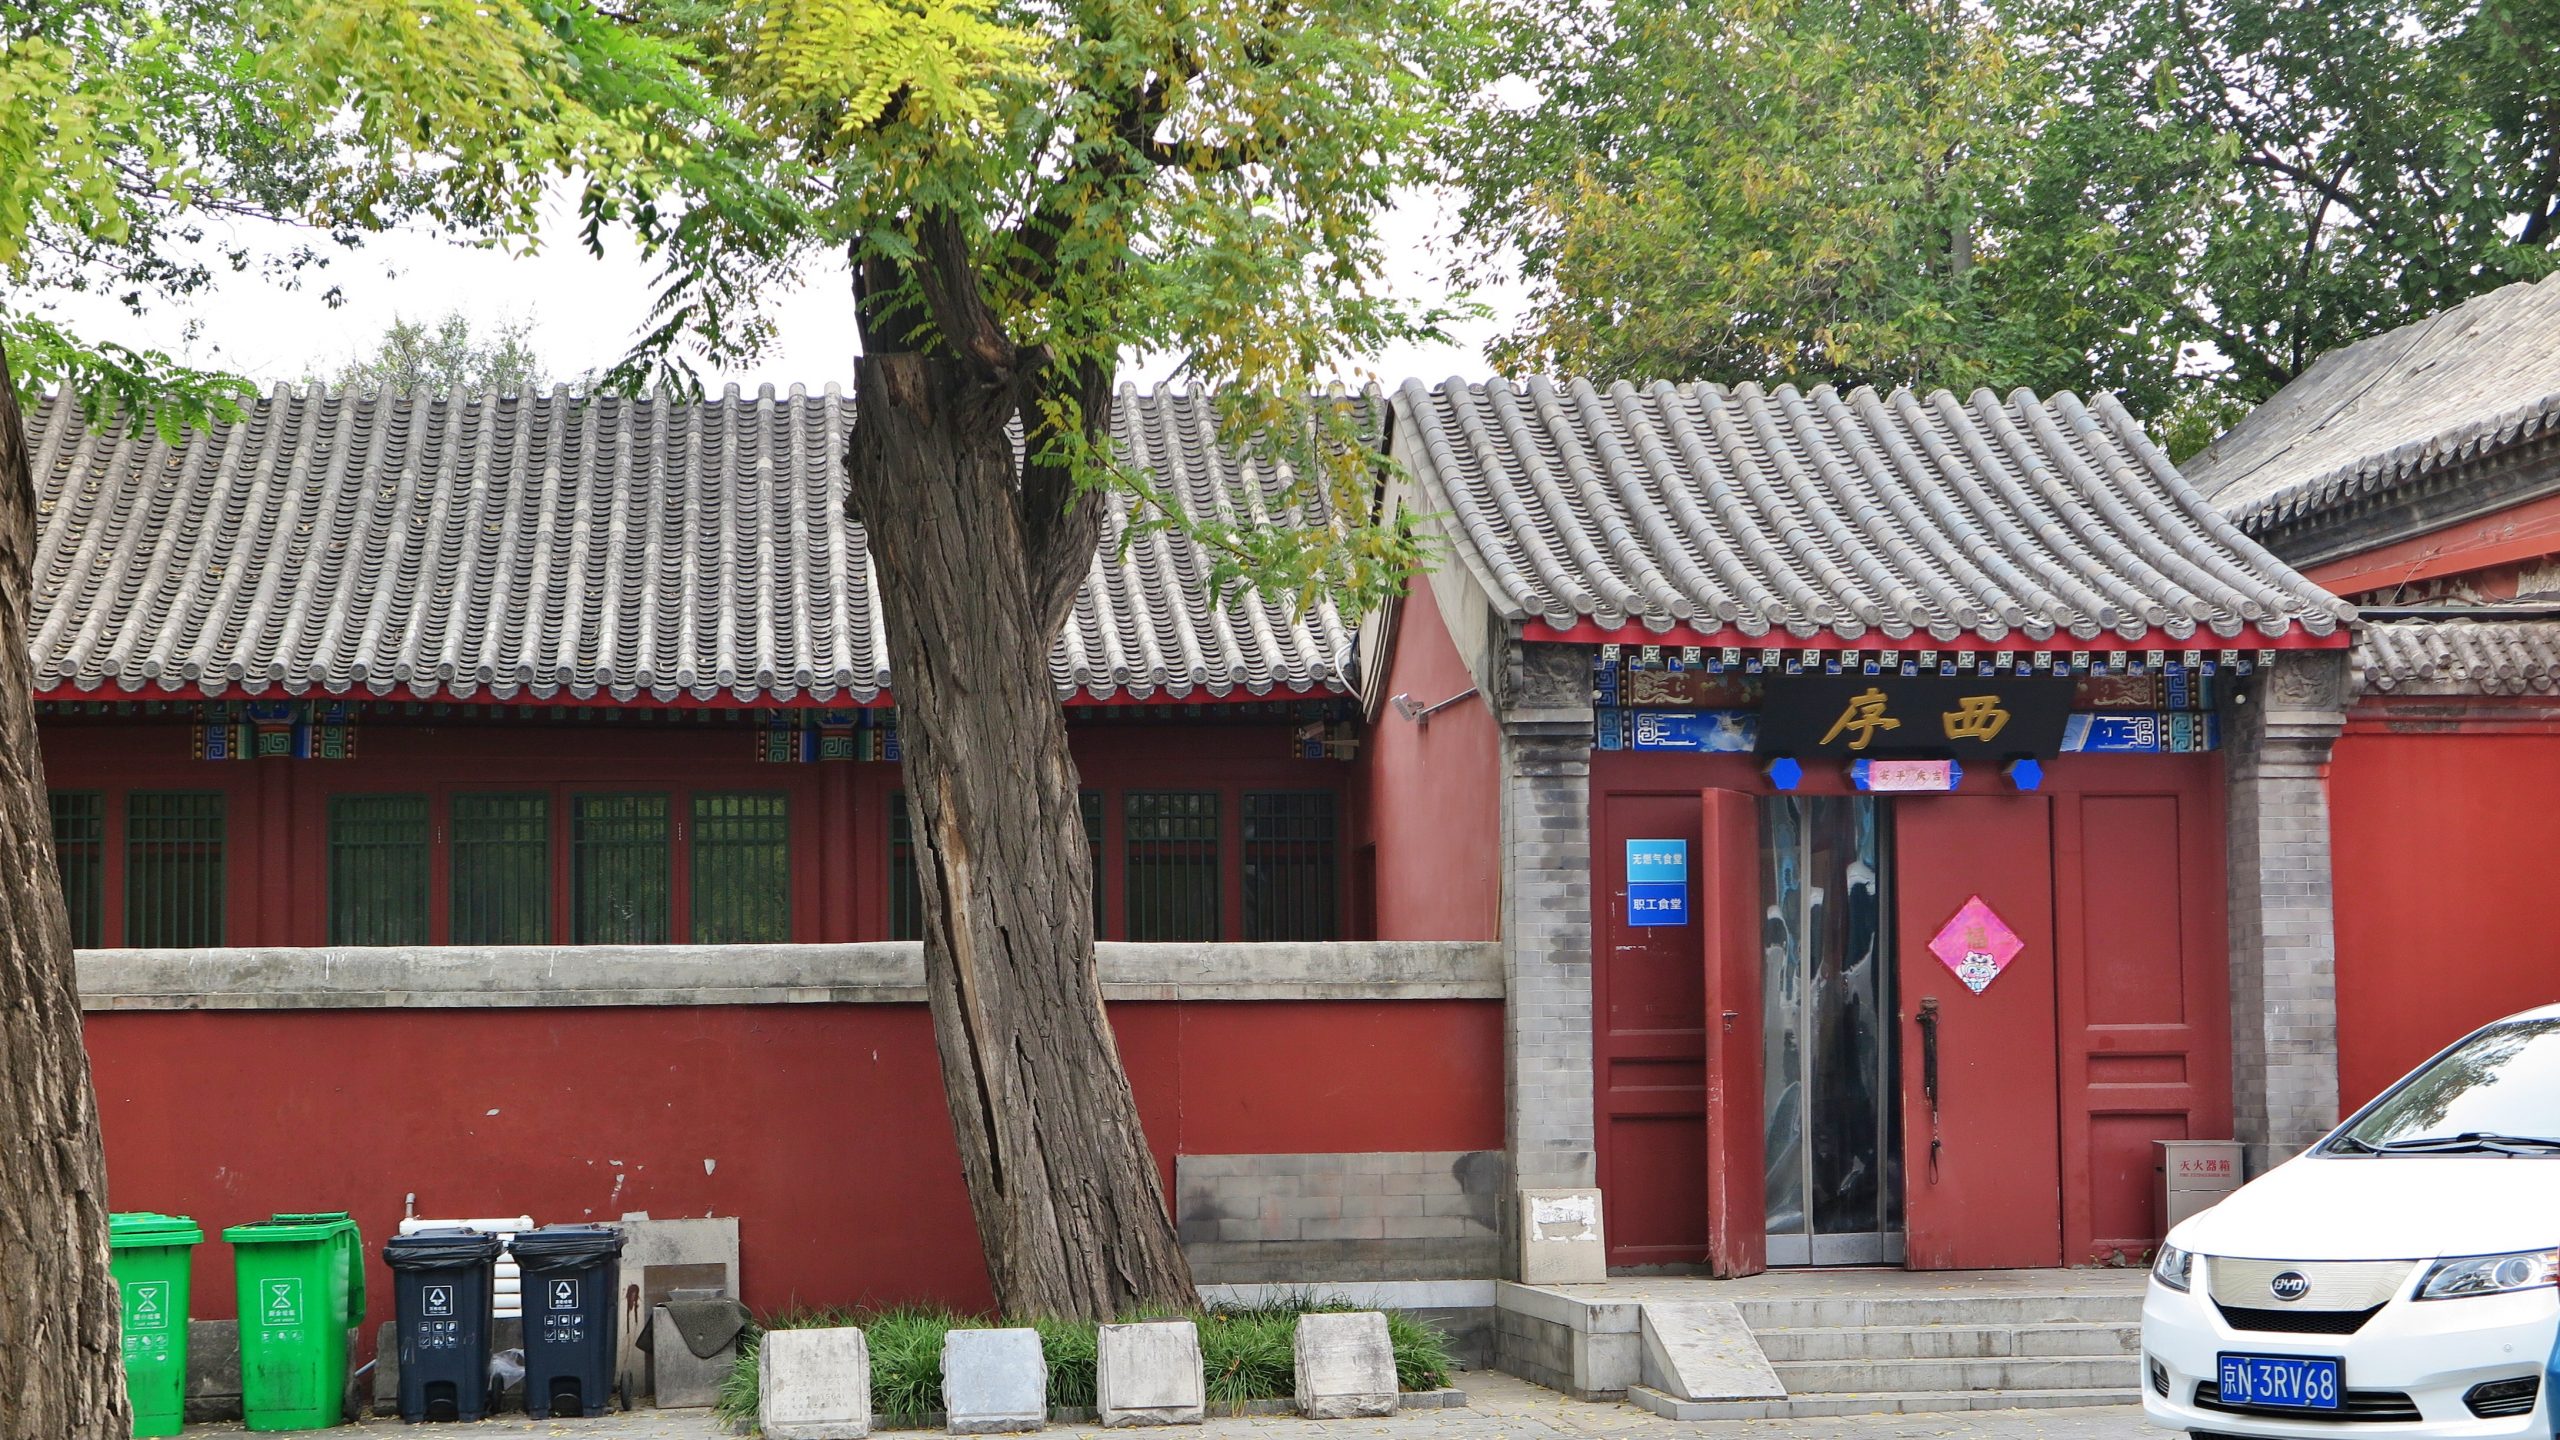 北京石刻艺术博物馆/五塔寺大门入口厢房